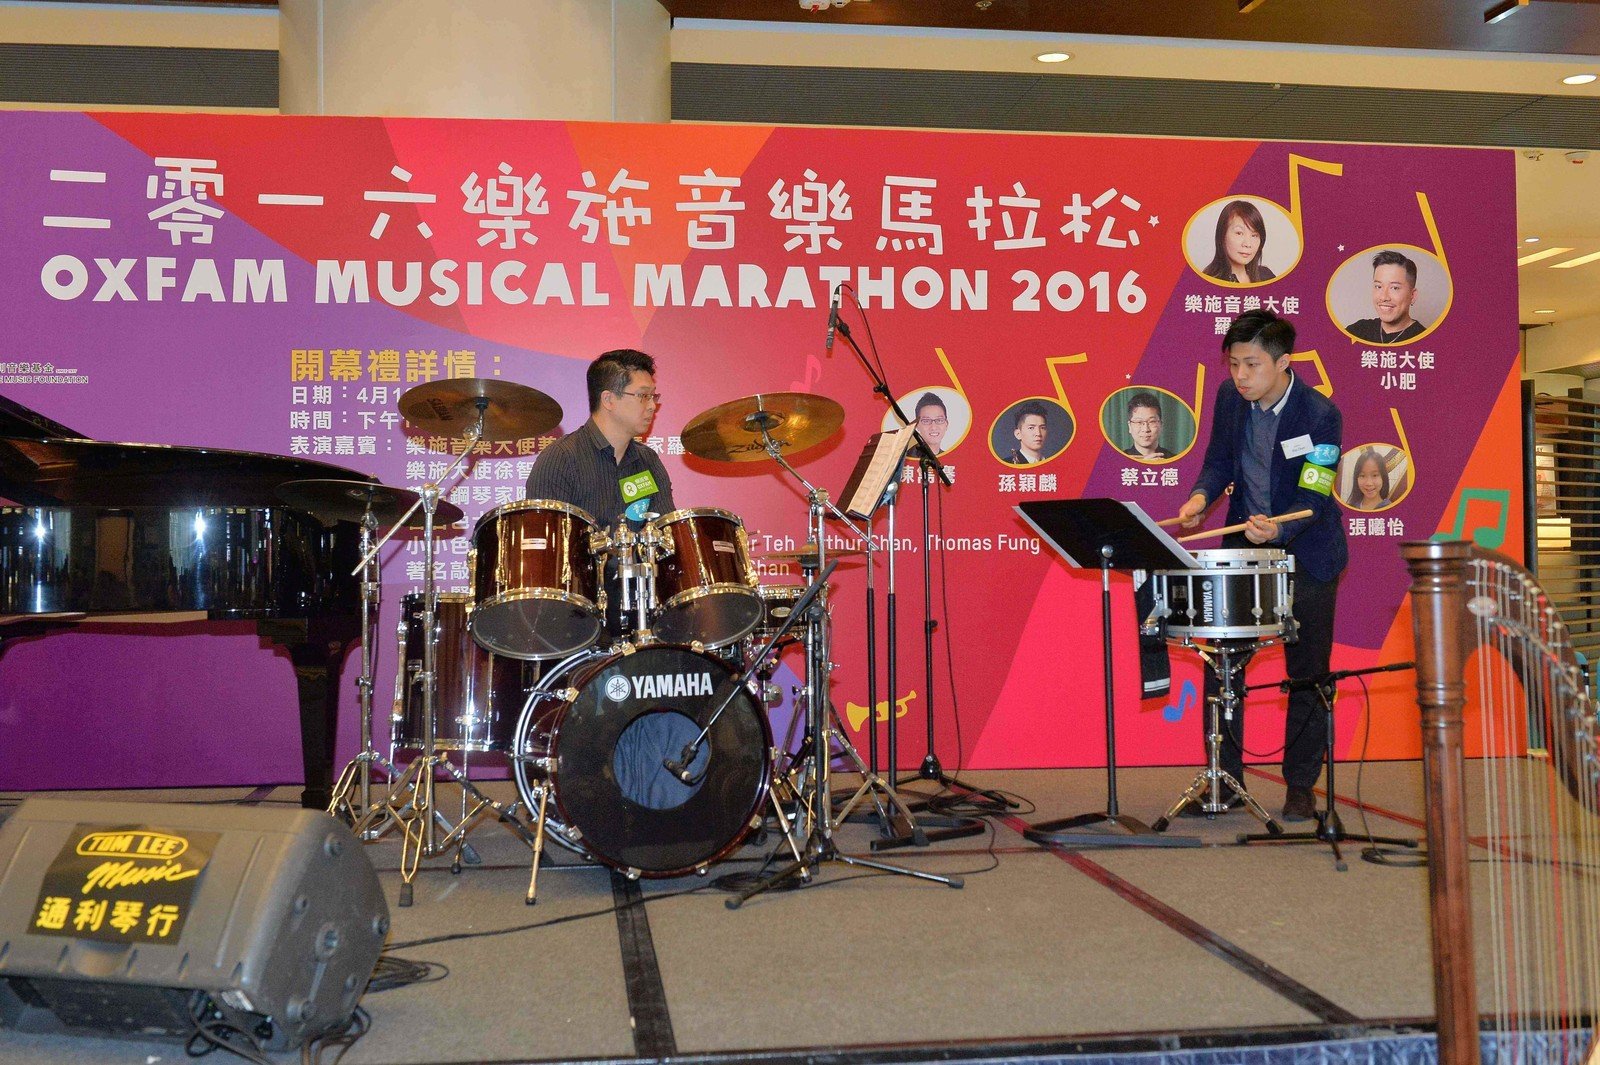 著名敲擊樂家蔡立德及其學生Gip Chan表演步操小鼓及爵士鼓二重奏，為「2016樂施音樂馬拉松」開幕禮揭開序幕。